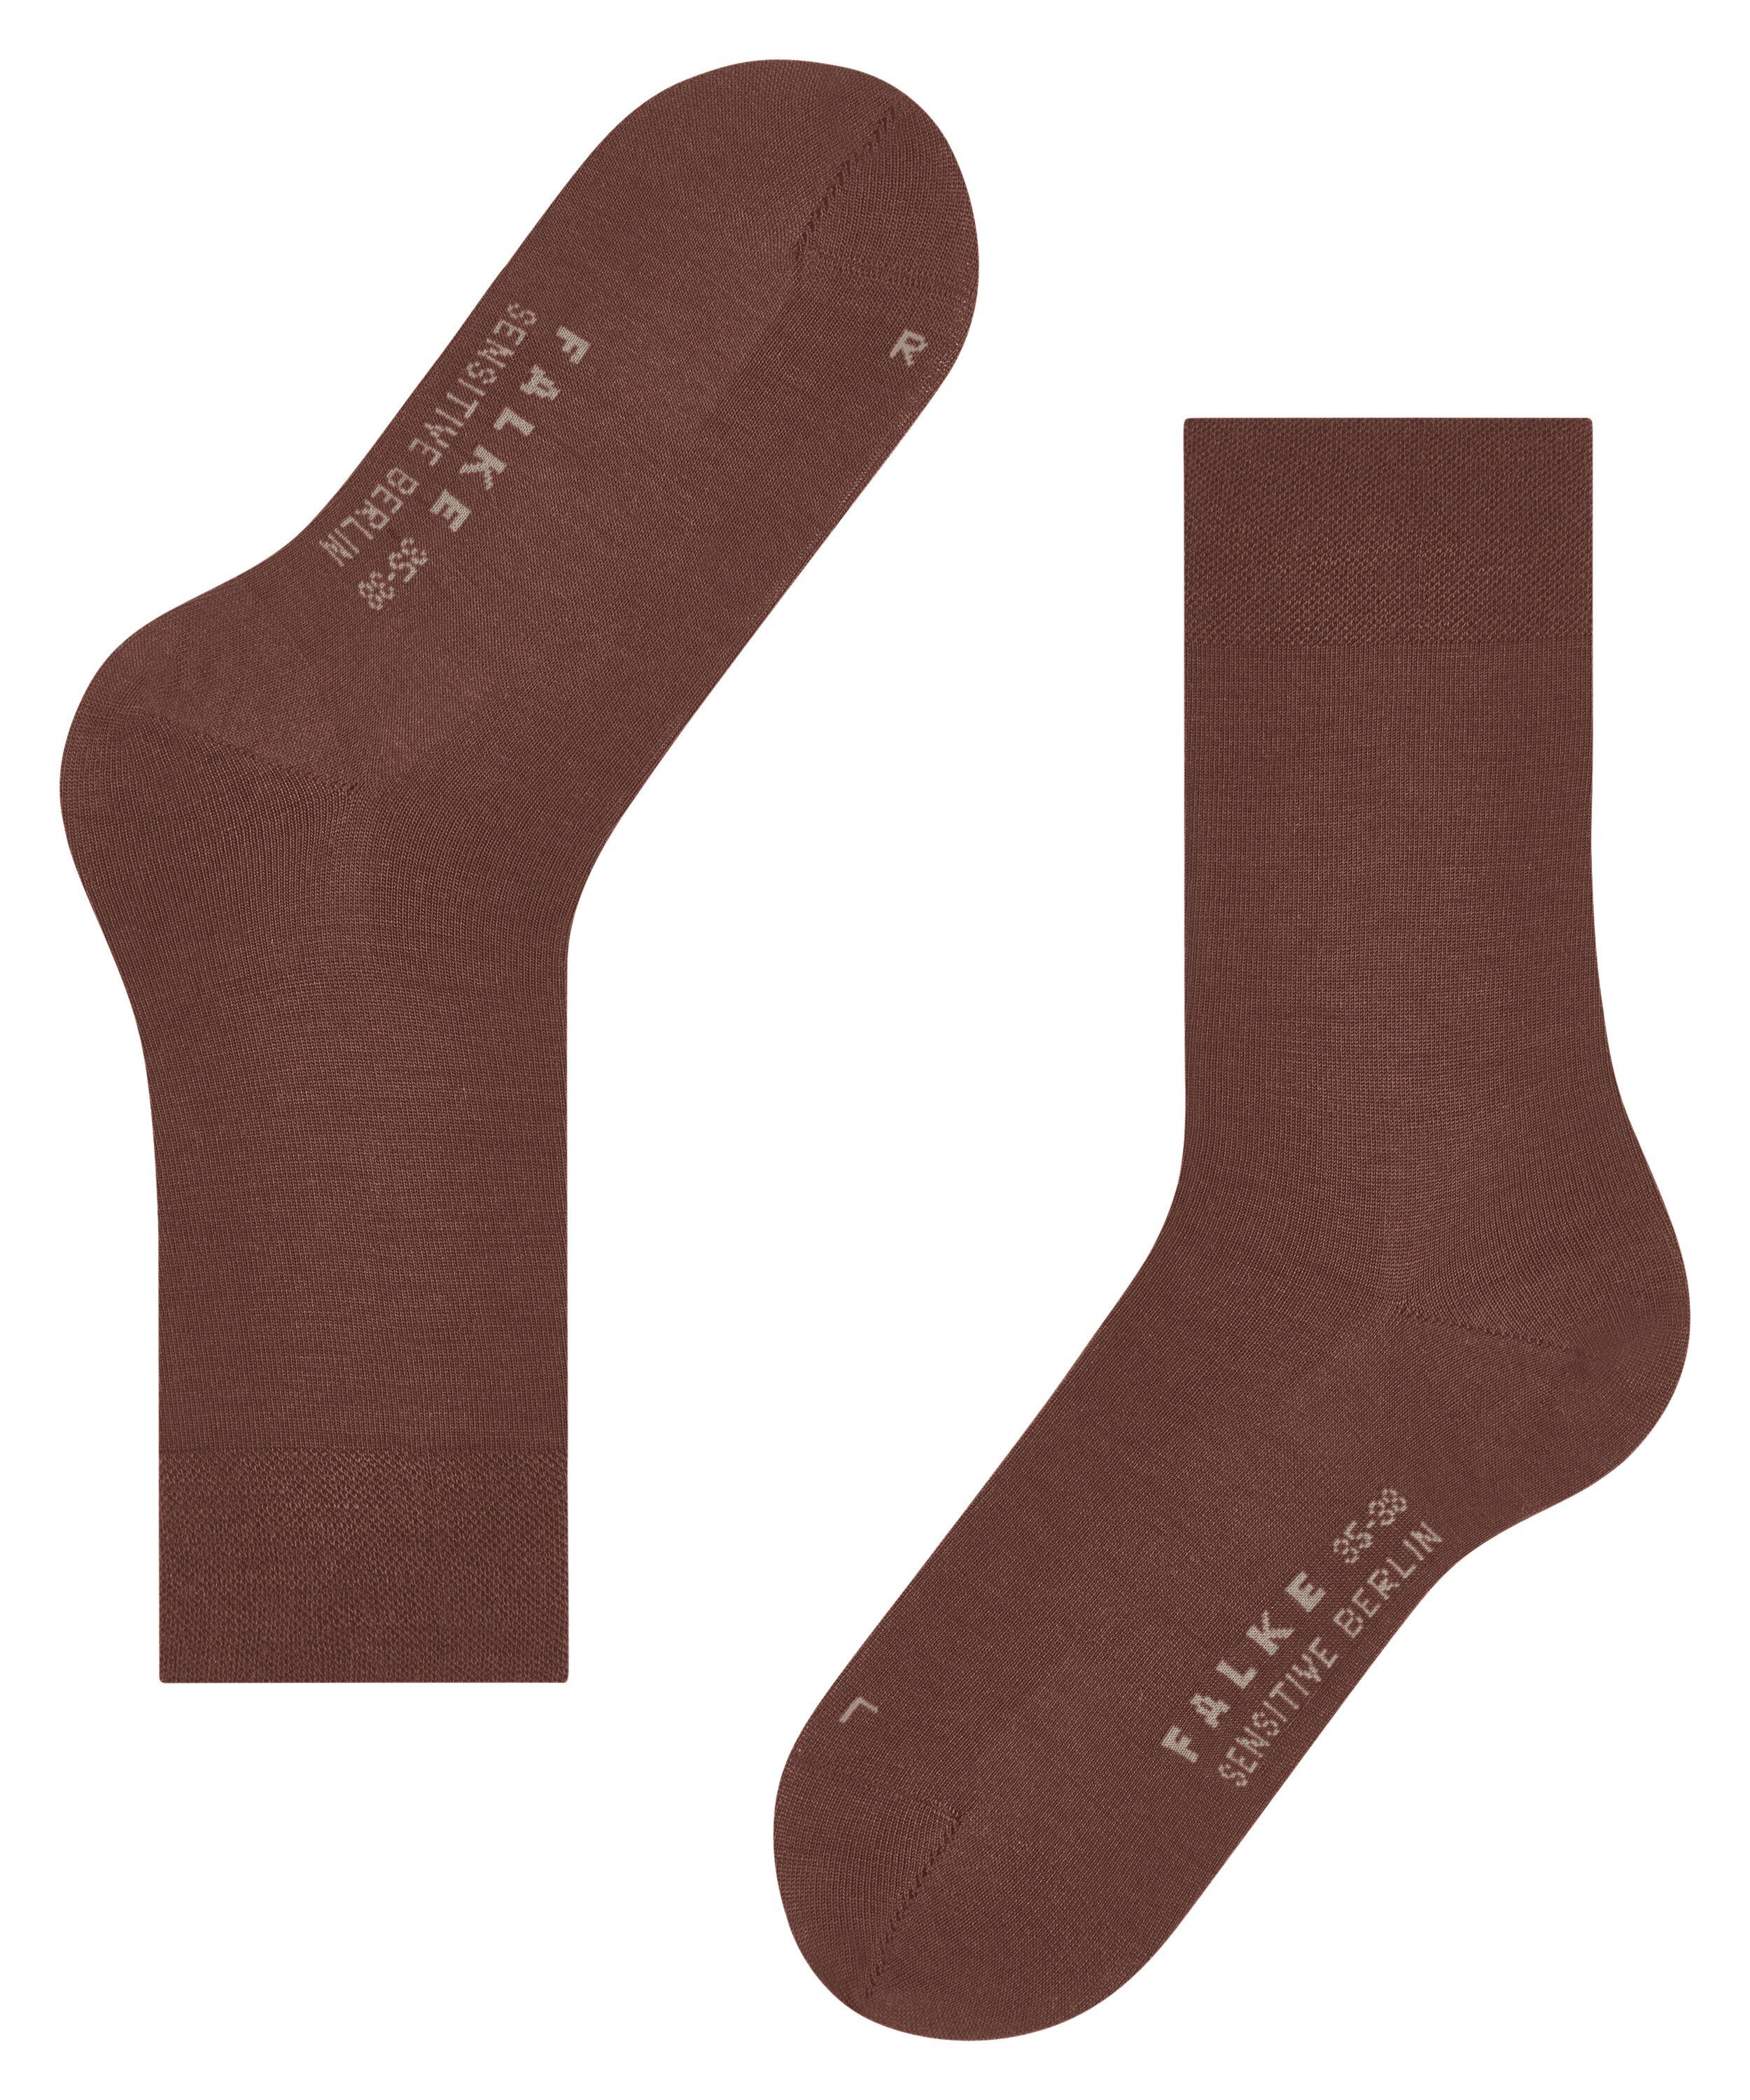 brandy (1-Paar) Berlin Sensitive Socken FALKE (5167)